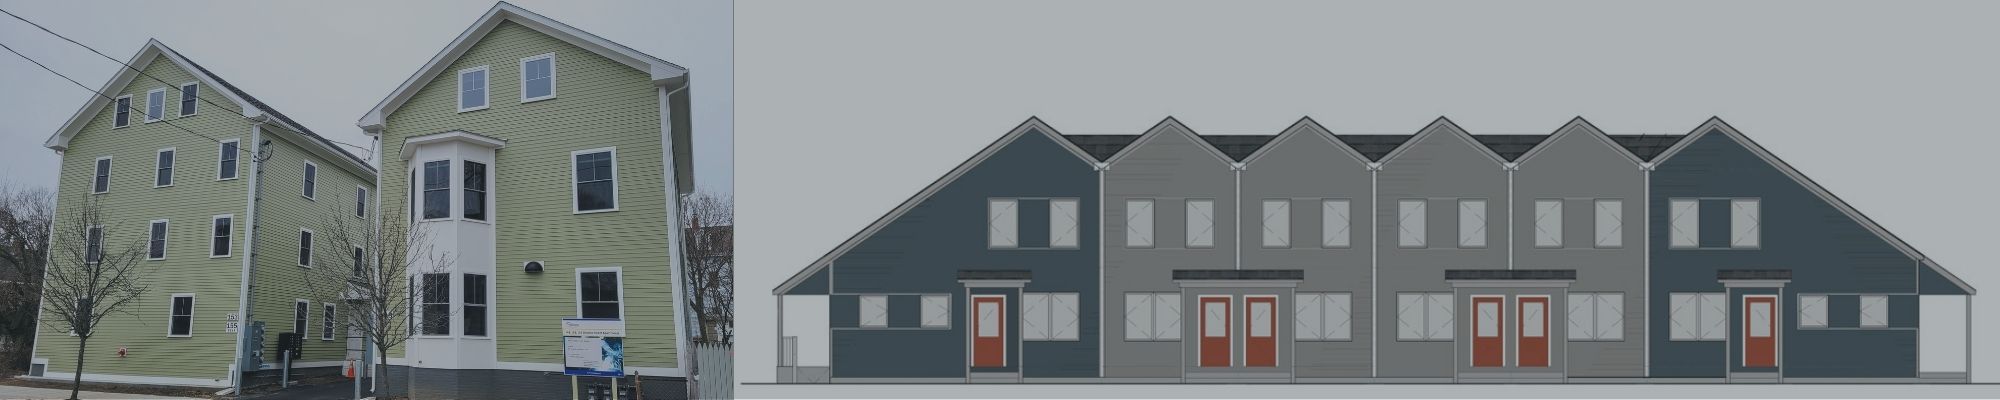 ONE Neighborhood Builders expande a habitação a preços acessíveis com os empreendimentos Delaine e Bowdoin